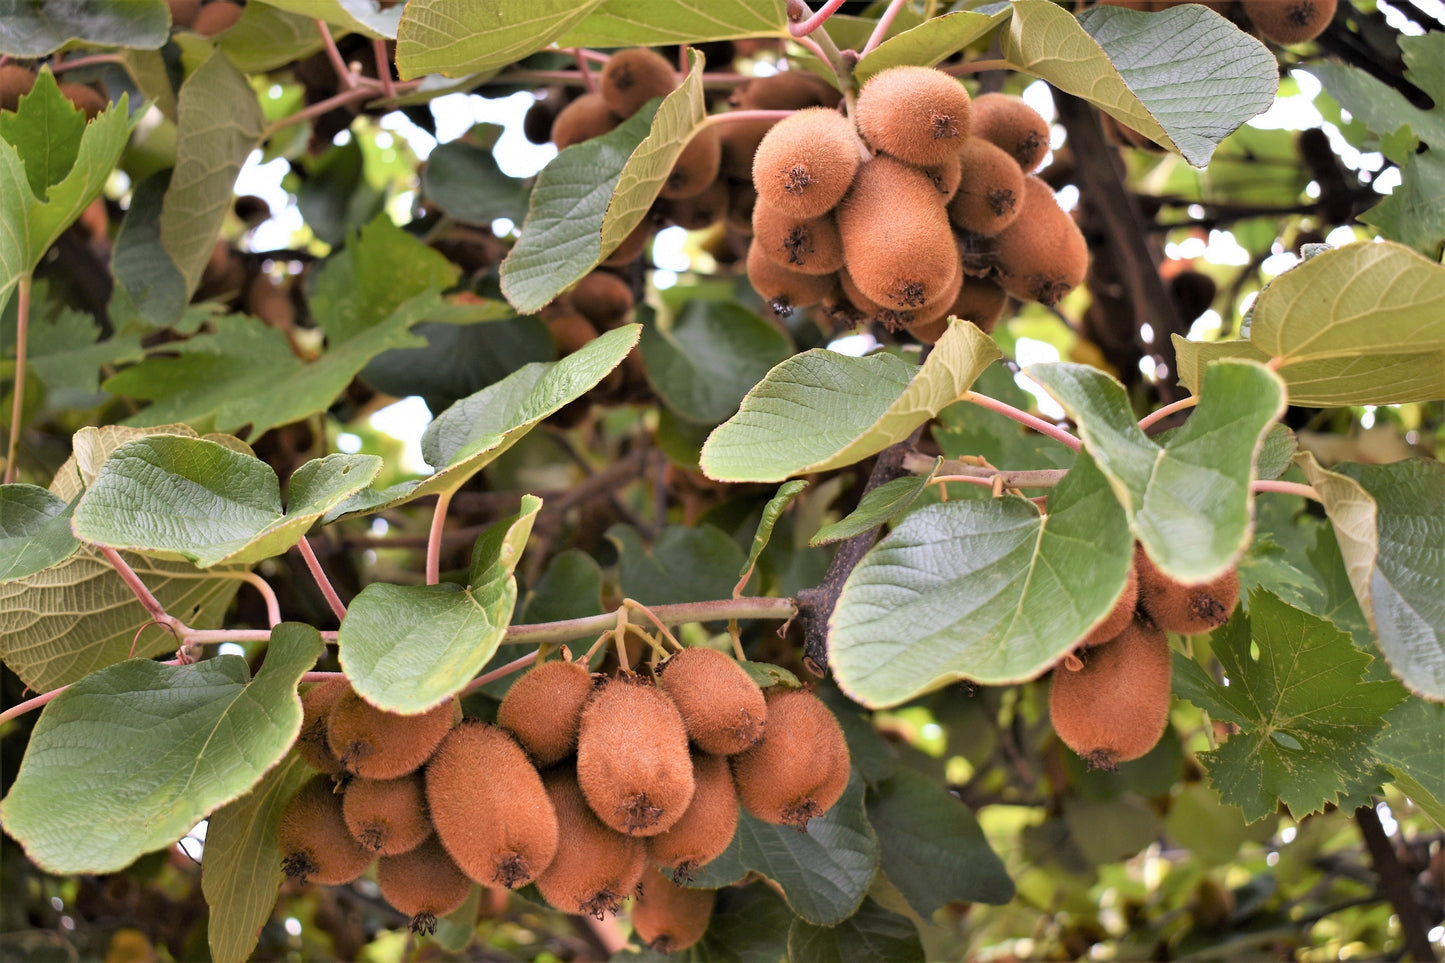 100 KIWI FRUIT Kiwi Actinidia Vine Seeds (Kiwifruit / Hardy Kiwi / Tara Vine / Yang Tao / Chinese Gooseberry / Chinese Strawberry)